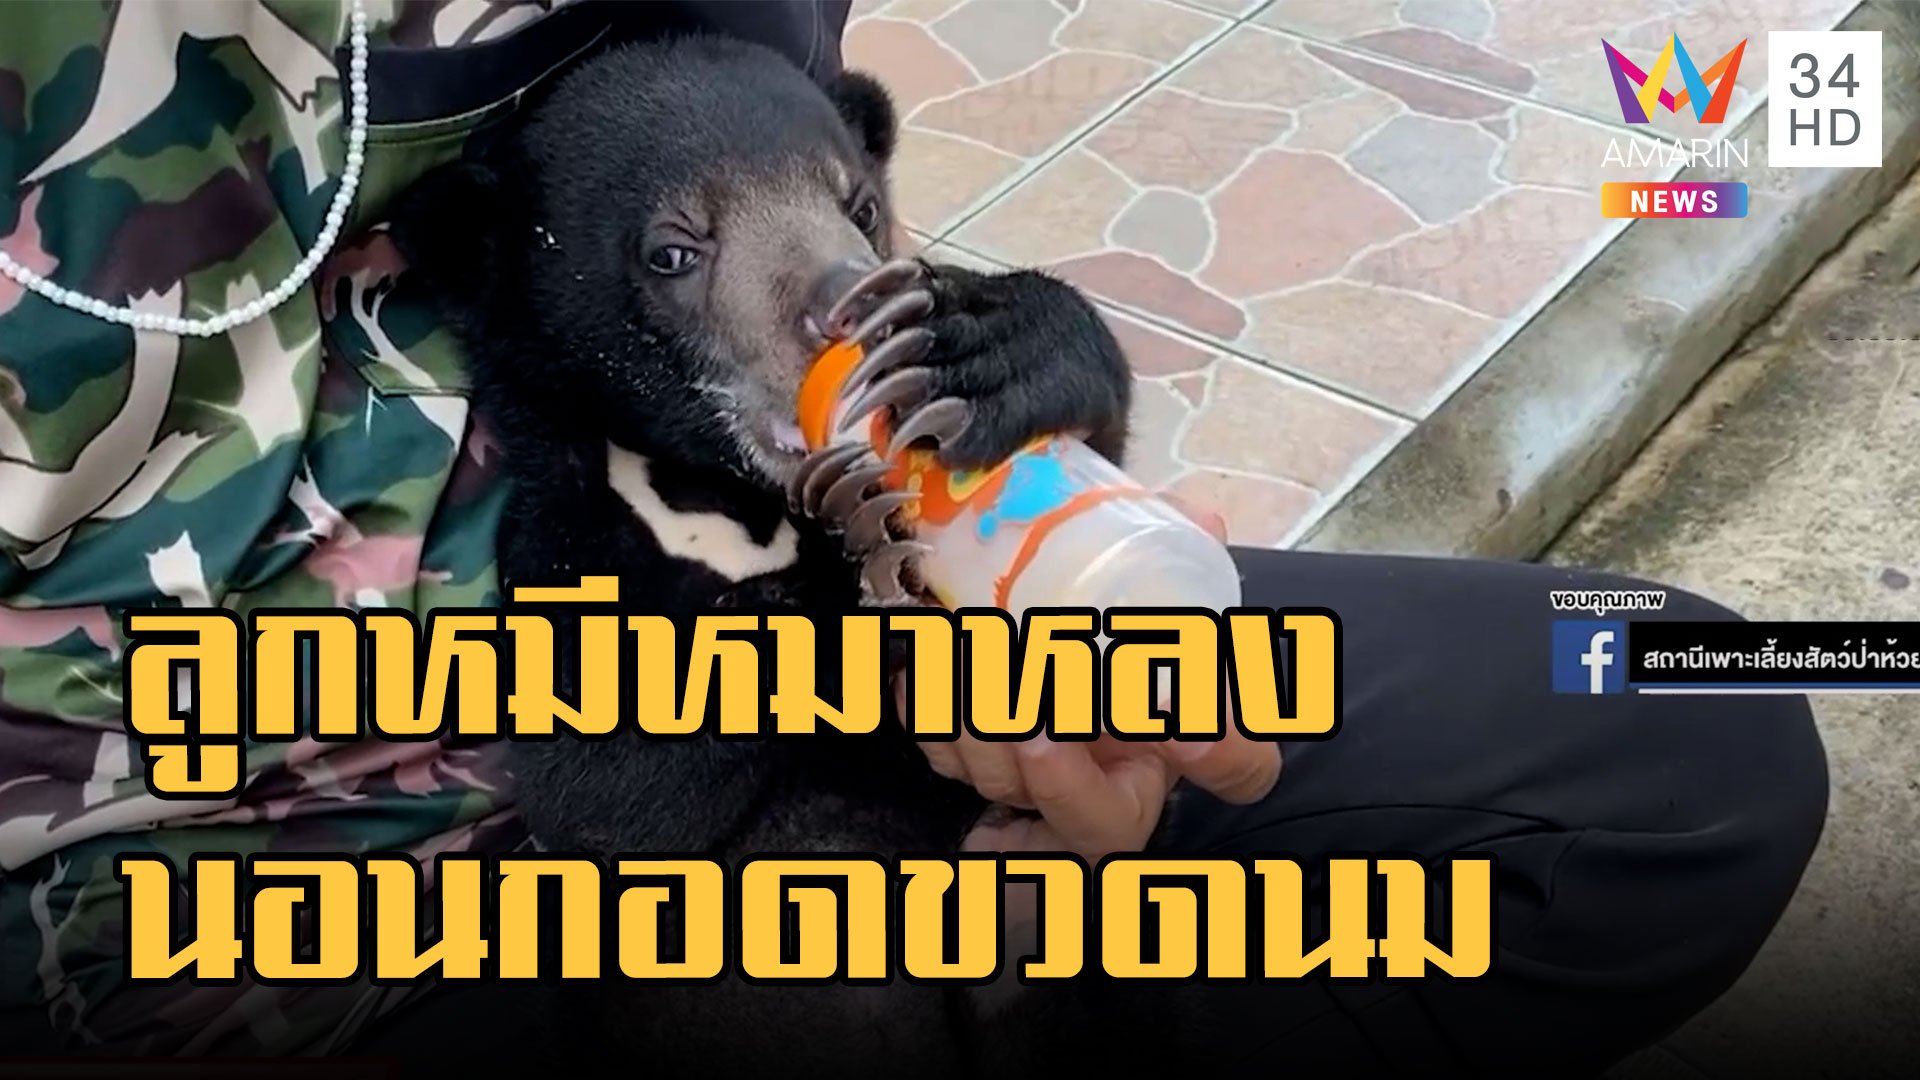 ลูกหมีหมาหลงกับแม่ น่ารักเหมือนคุ๊กตา หิวหนักนอนกอดขวดนม | ข่าวอรุณอมรินทร์ | 14 ก.ย. 65 | AMARIN TVHD34